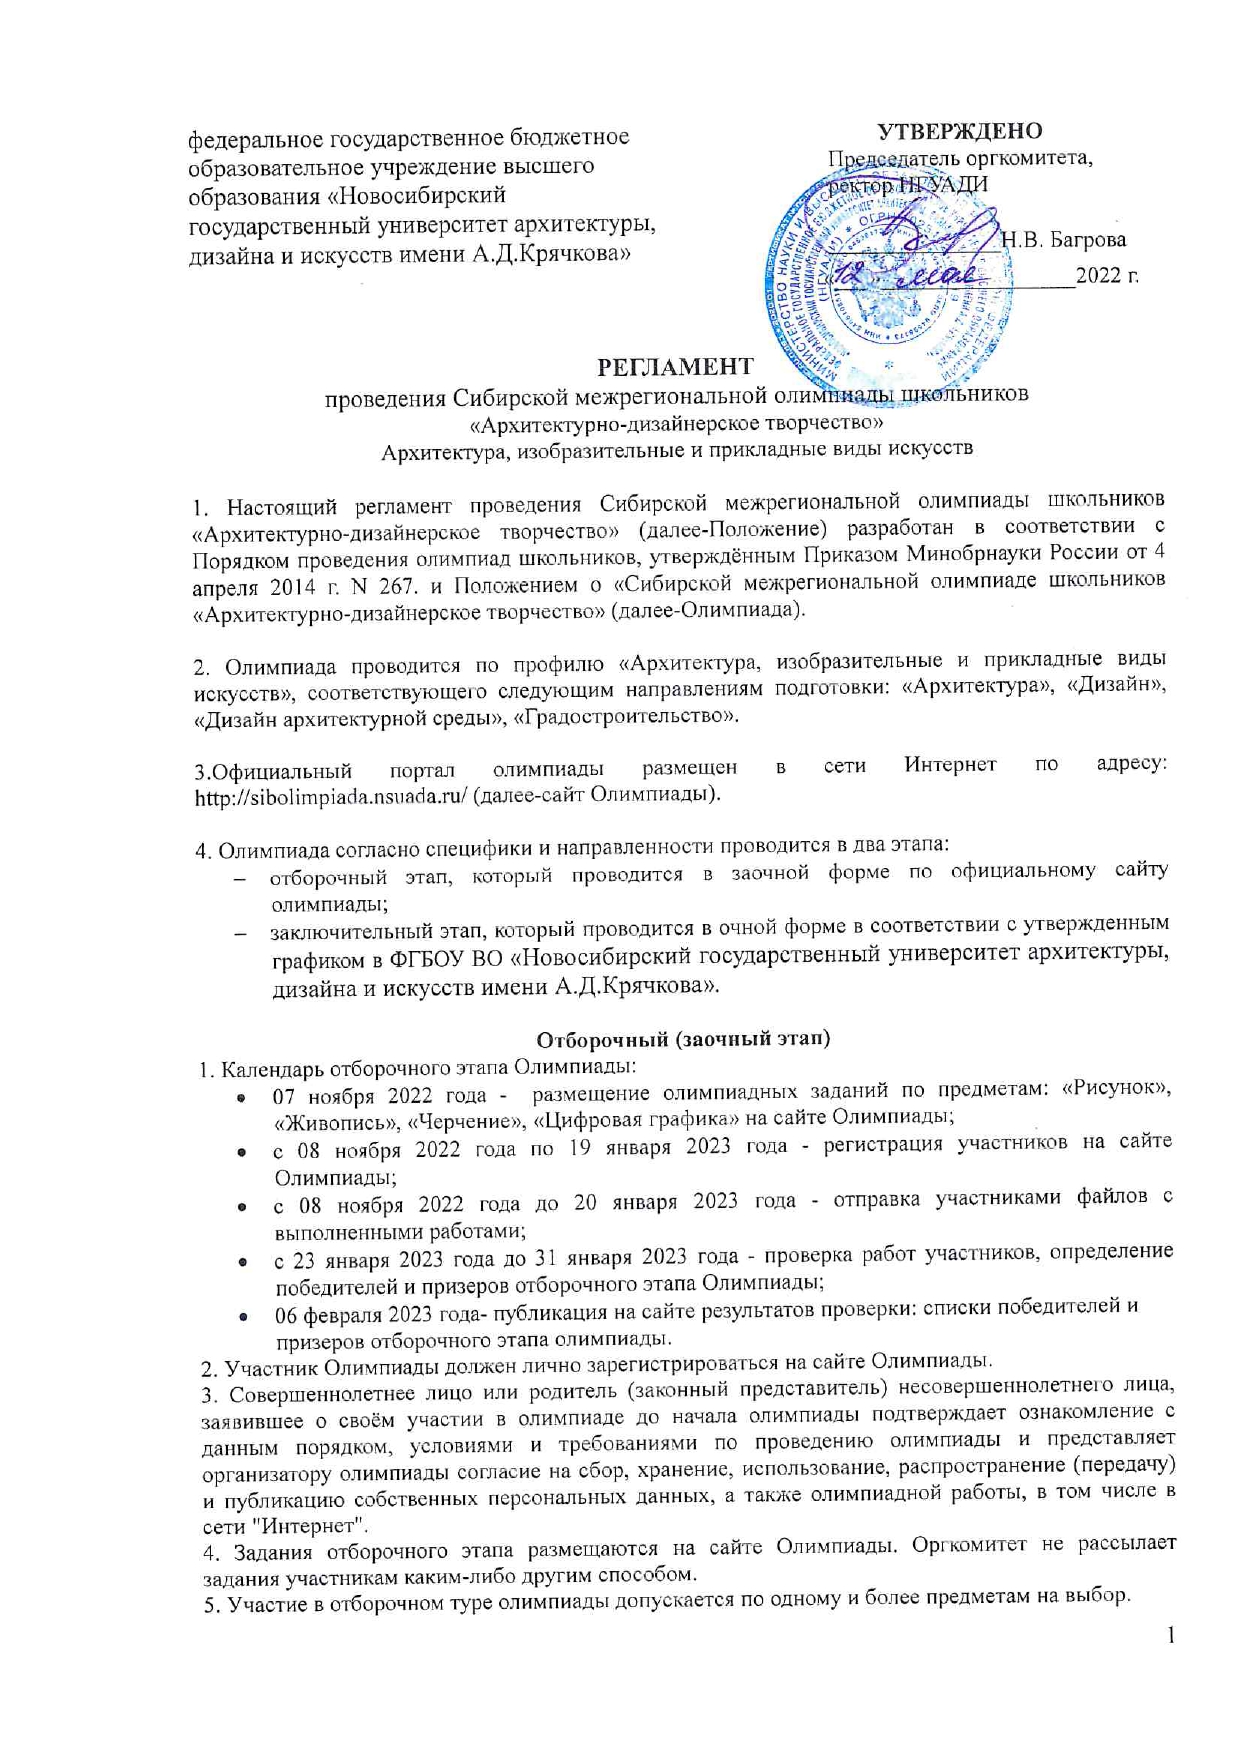 Регламент проведения Сибирской межрегиональной олимпиады 2022-2023г.